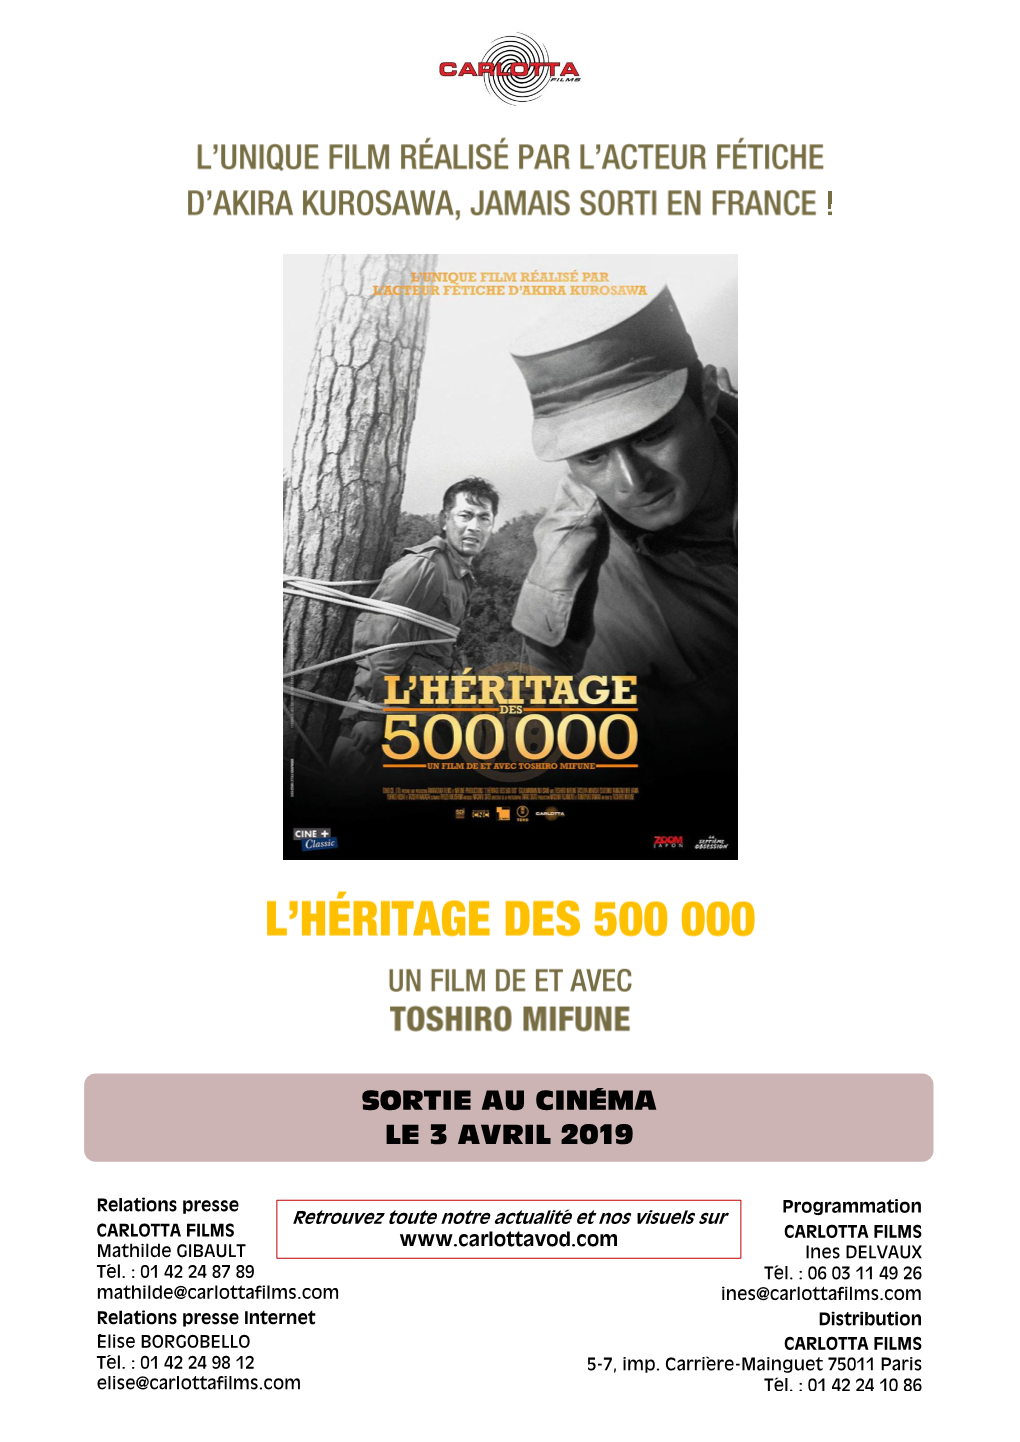 Sortie Au Cinéma Le 3 Avril 2019